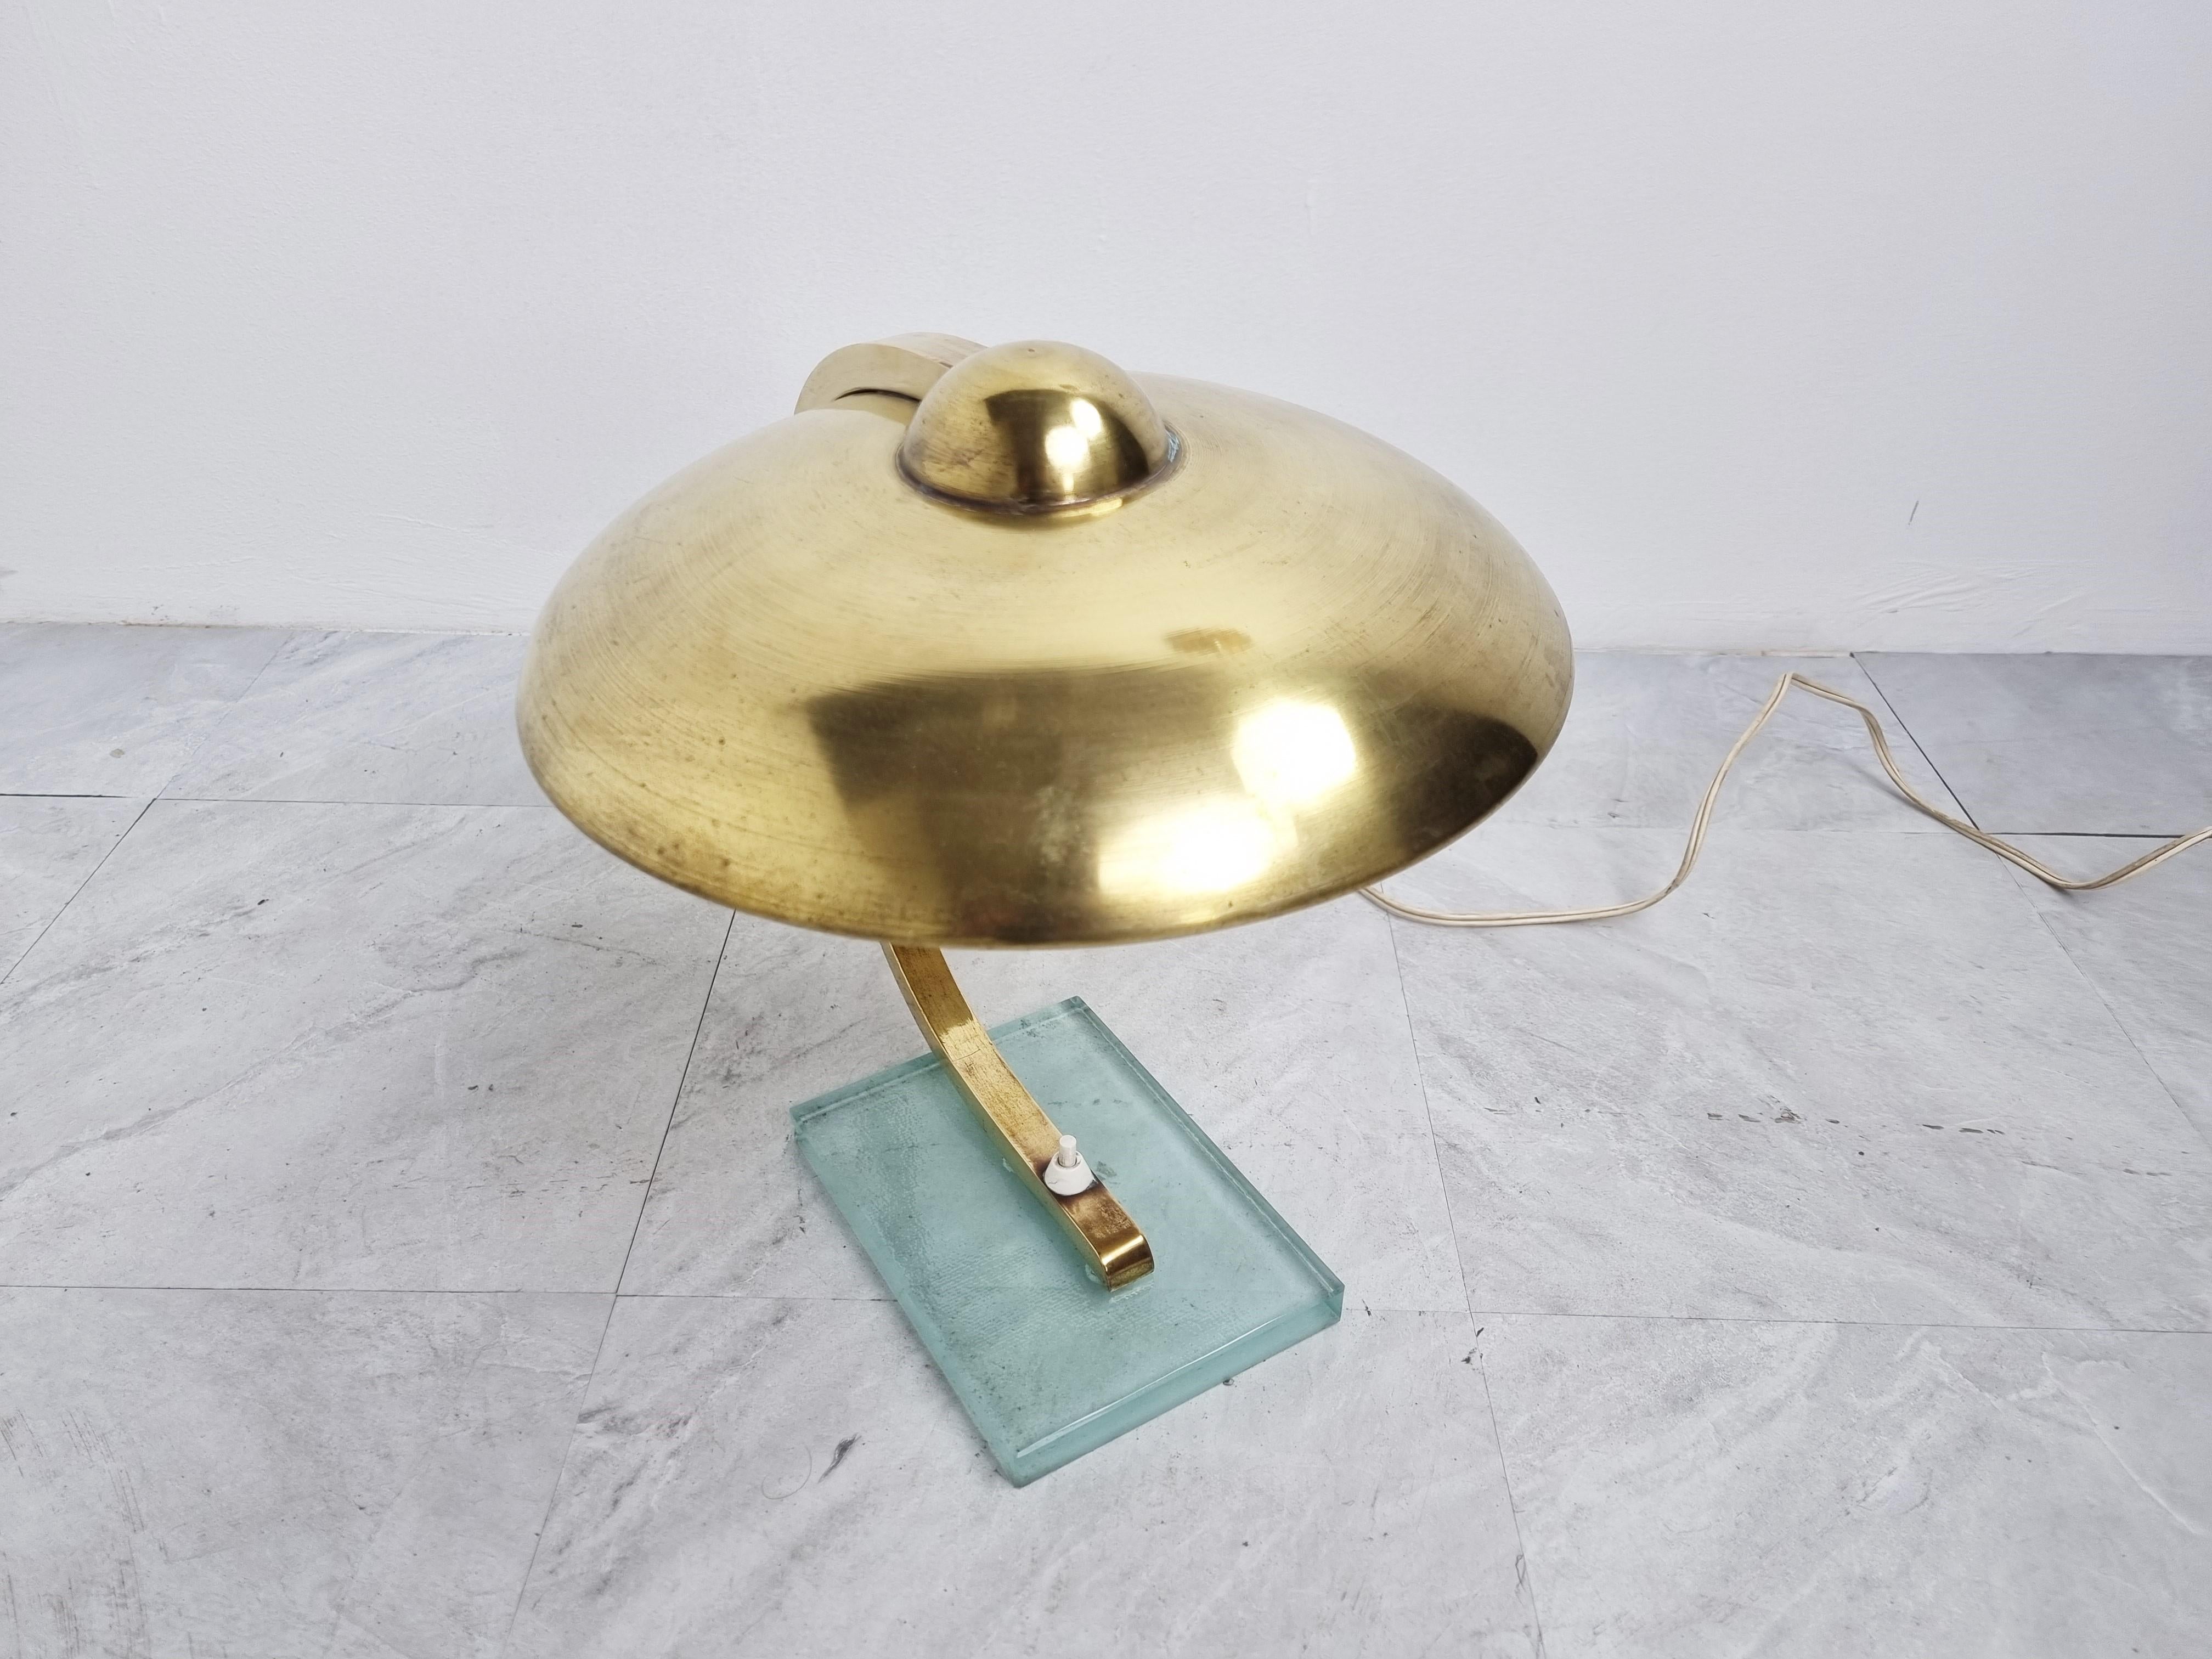 Belle lampe de bureau originale Art Déco/Bauhaus en laiton avec une base en verre.

Un design Art Déco typique et élégant avec un beau laiton patiné.

Il fonctionne aussi bien sur 220 que sur 110v. 

Mesures : Hauteur : 33cm/12.99